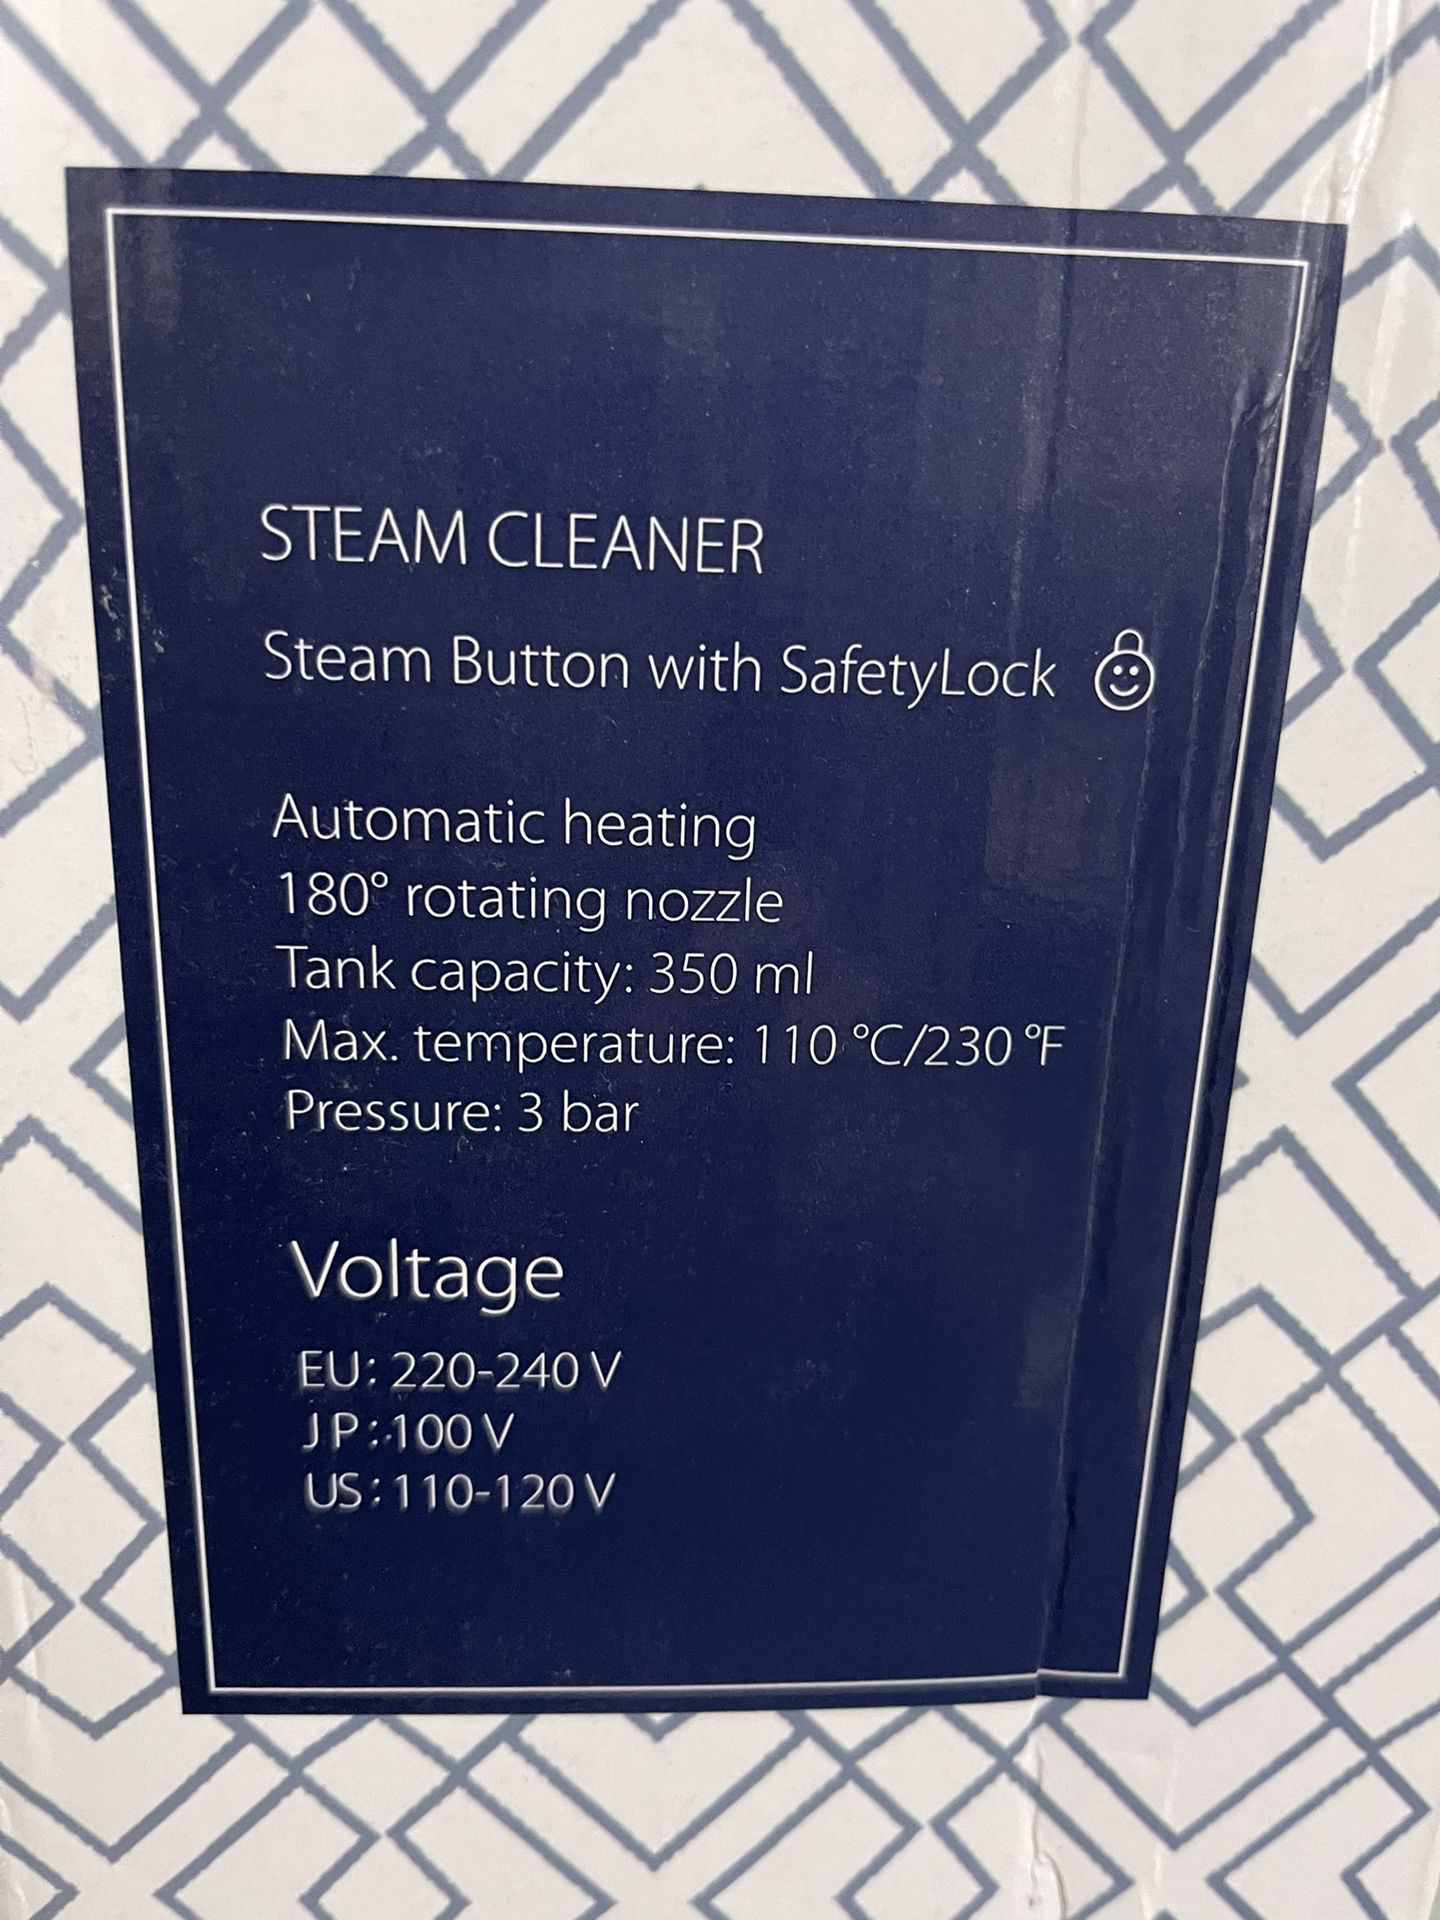 Handheld Pressurized Steam Cleaner 